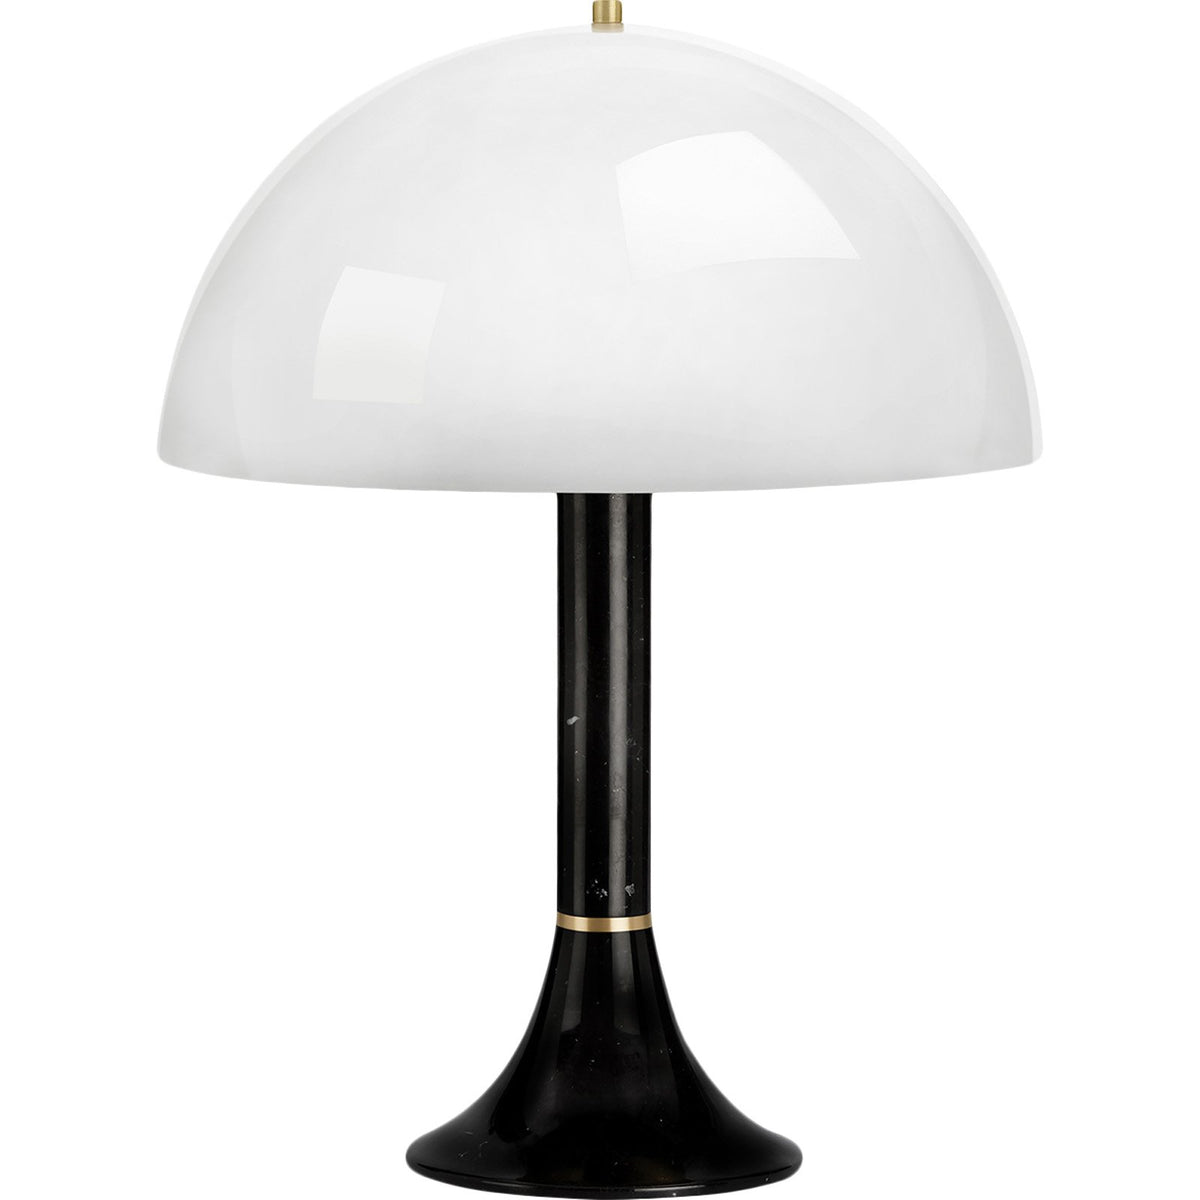 Bloomsbury Table Lamp, Black